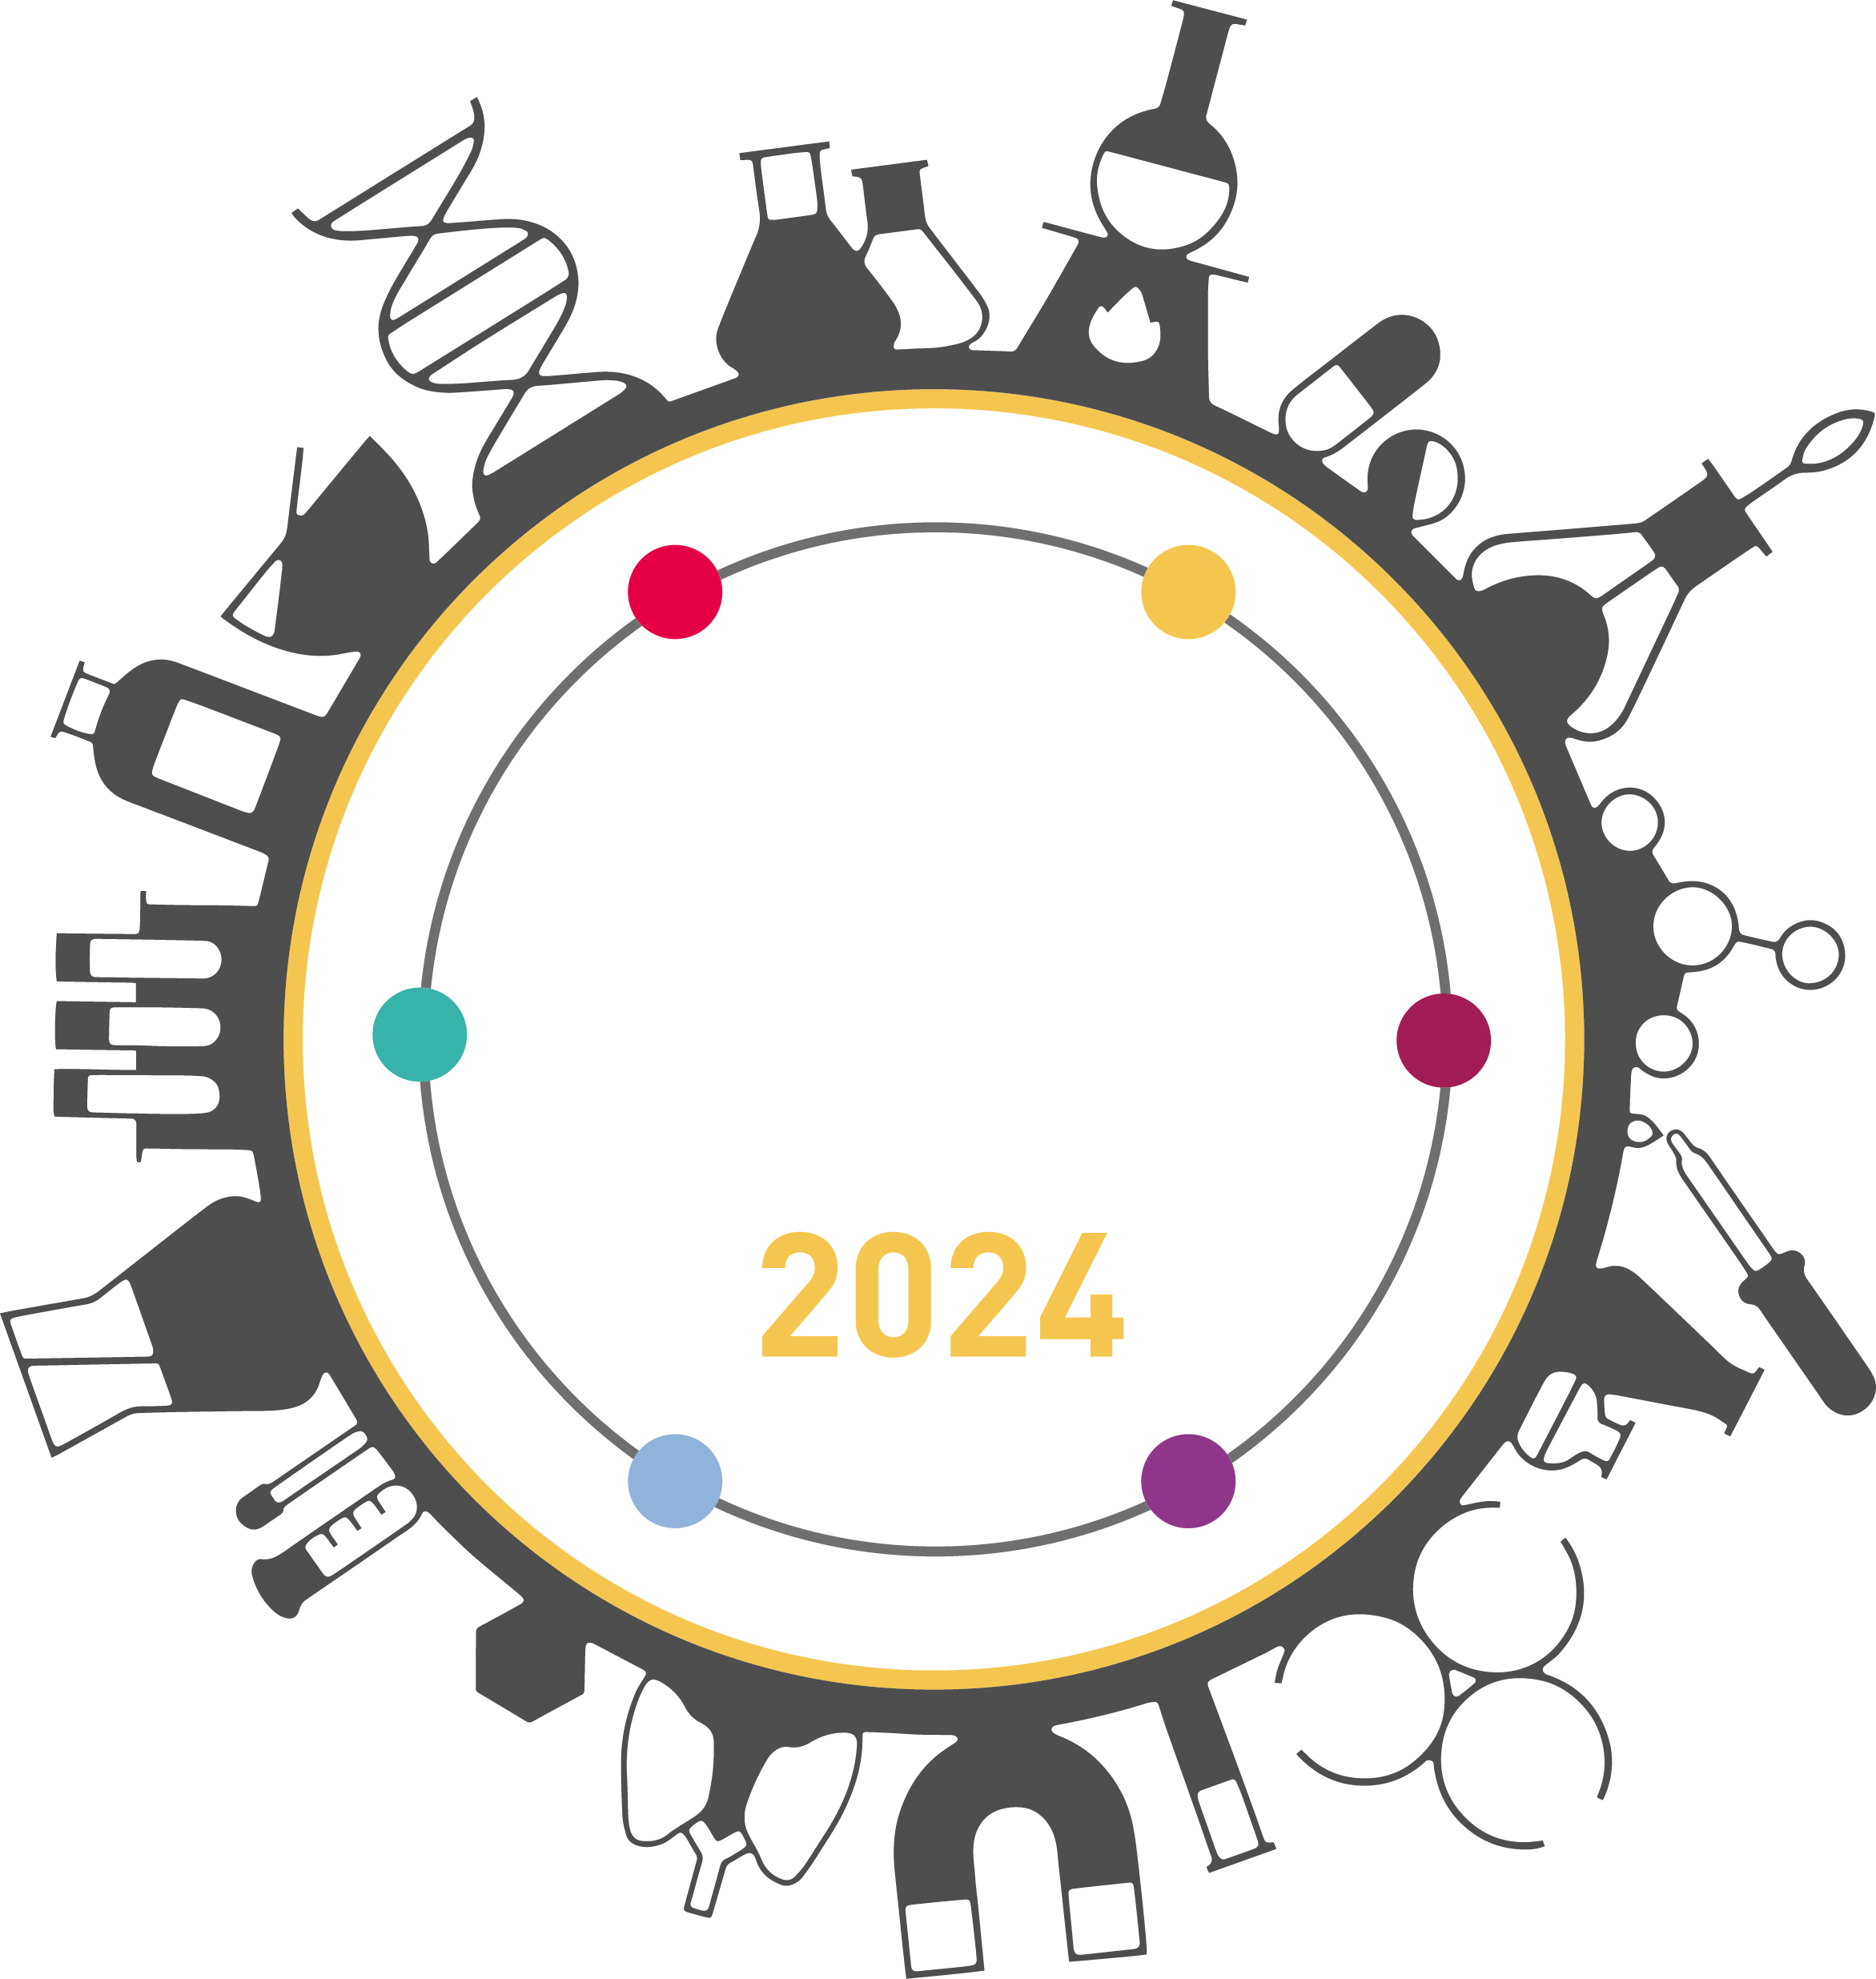 Scientific Laboratory Show & Conference  2022